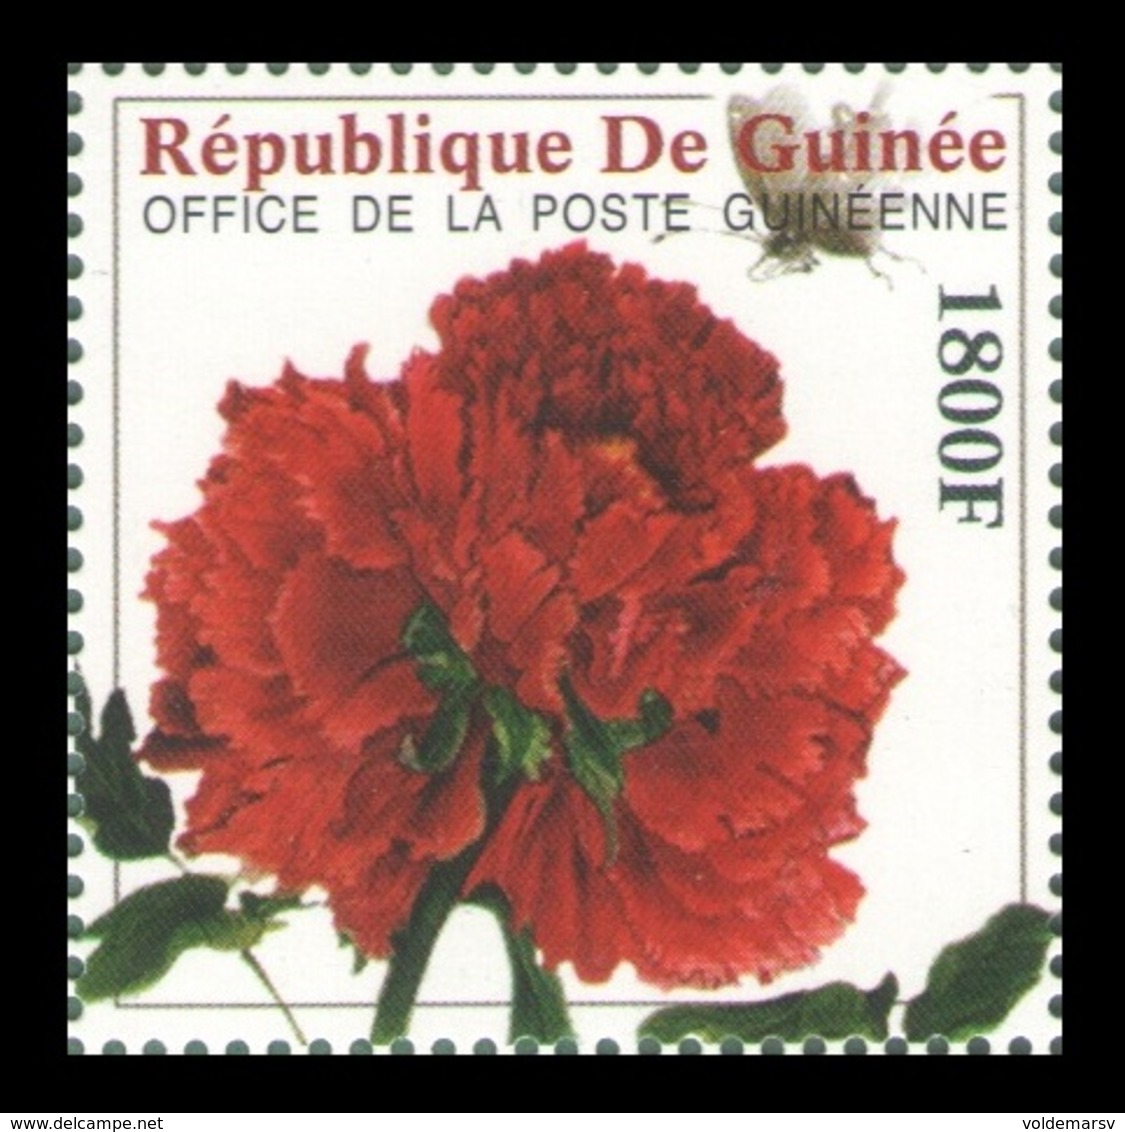 Guinea 2009 Mih. 6490 Flora. Flowers. Peony MNH ** - Guinea (1958-...)